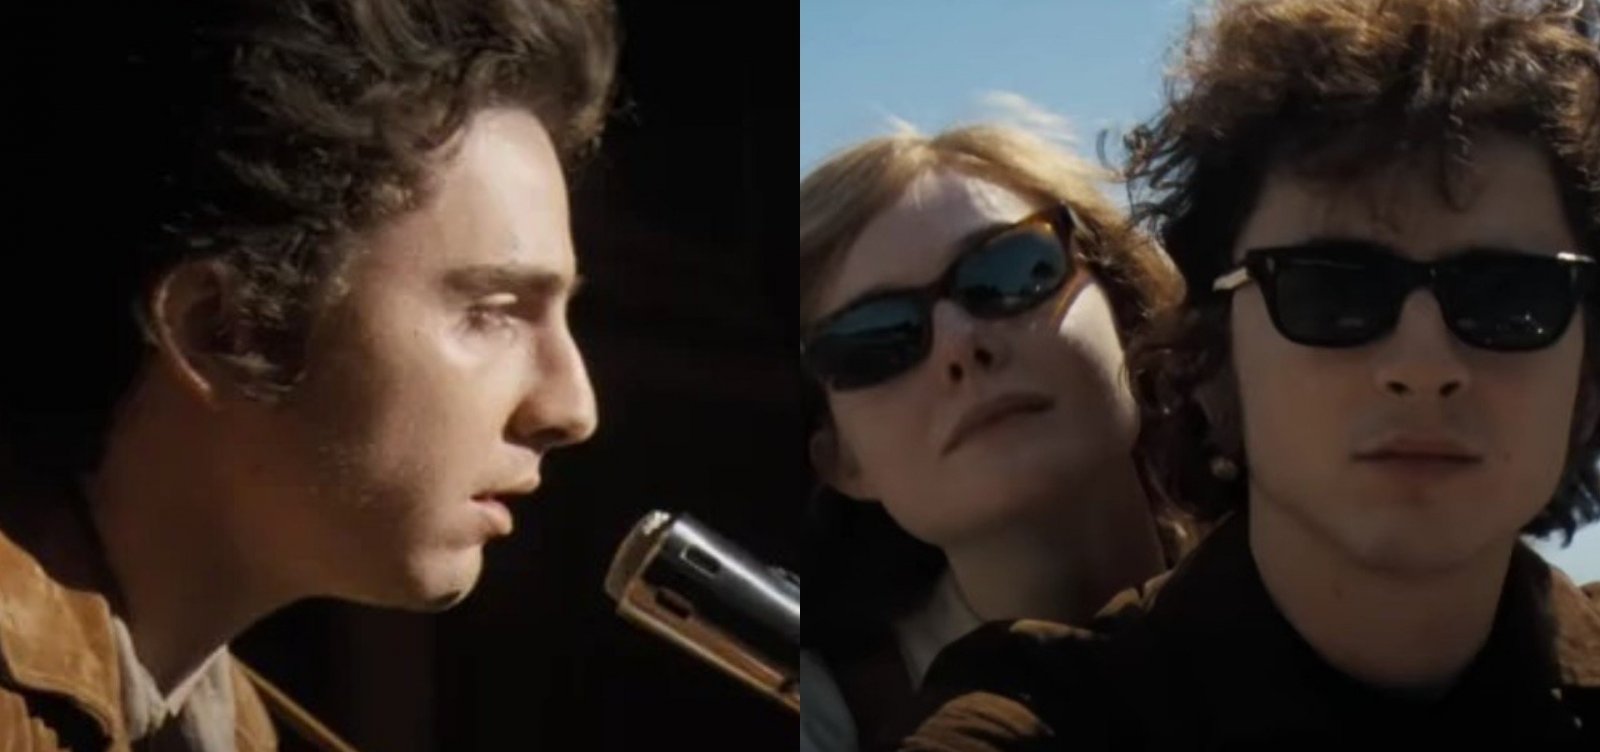 Cinebiografia de Bob Dylan, com Timothée Chalamet, ganha trailer e data de estreia; assista!